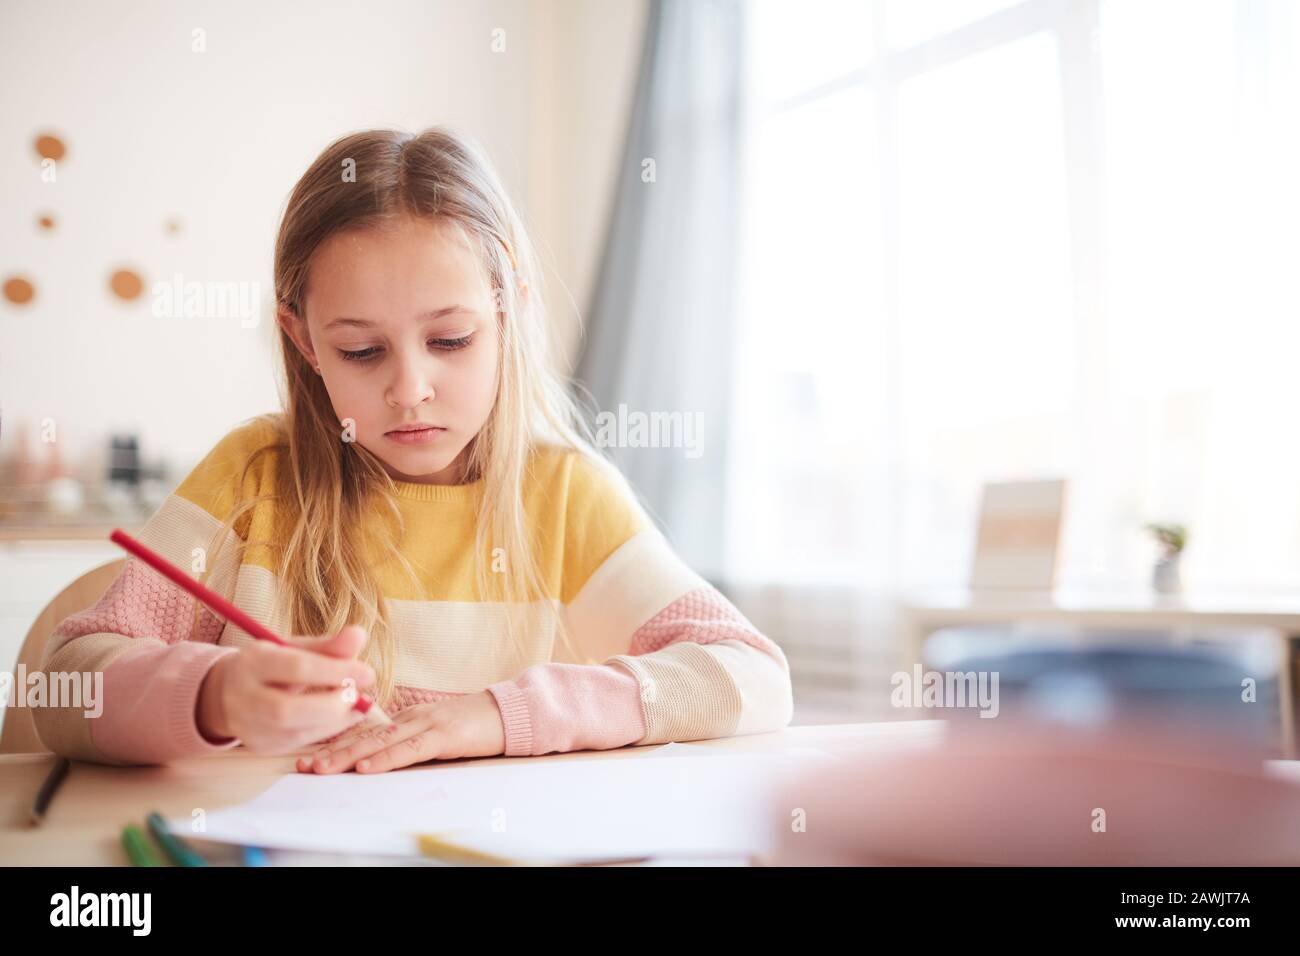 Portrait aux tons chauds de la jolie petite fille dessinant des images ou faisant des devoirs tout en étant assis à la table dans l'intérieur de la maison, espace de copie Banque D'Images